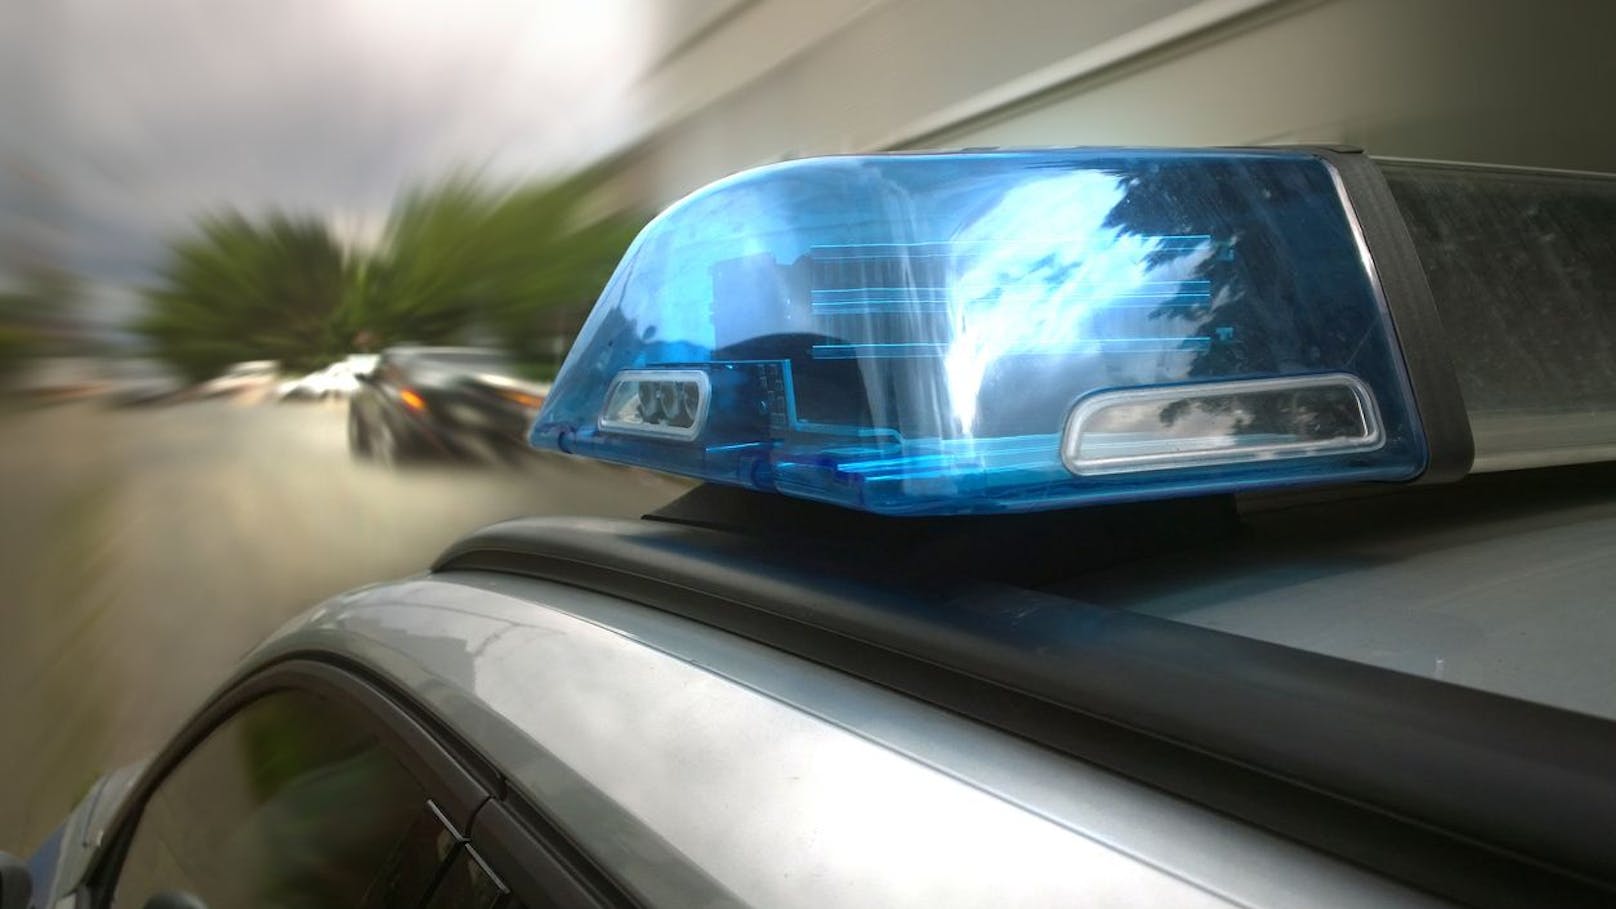 190 statt 100 km/h! Polizei schnappt Raser auf Autobahn